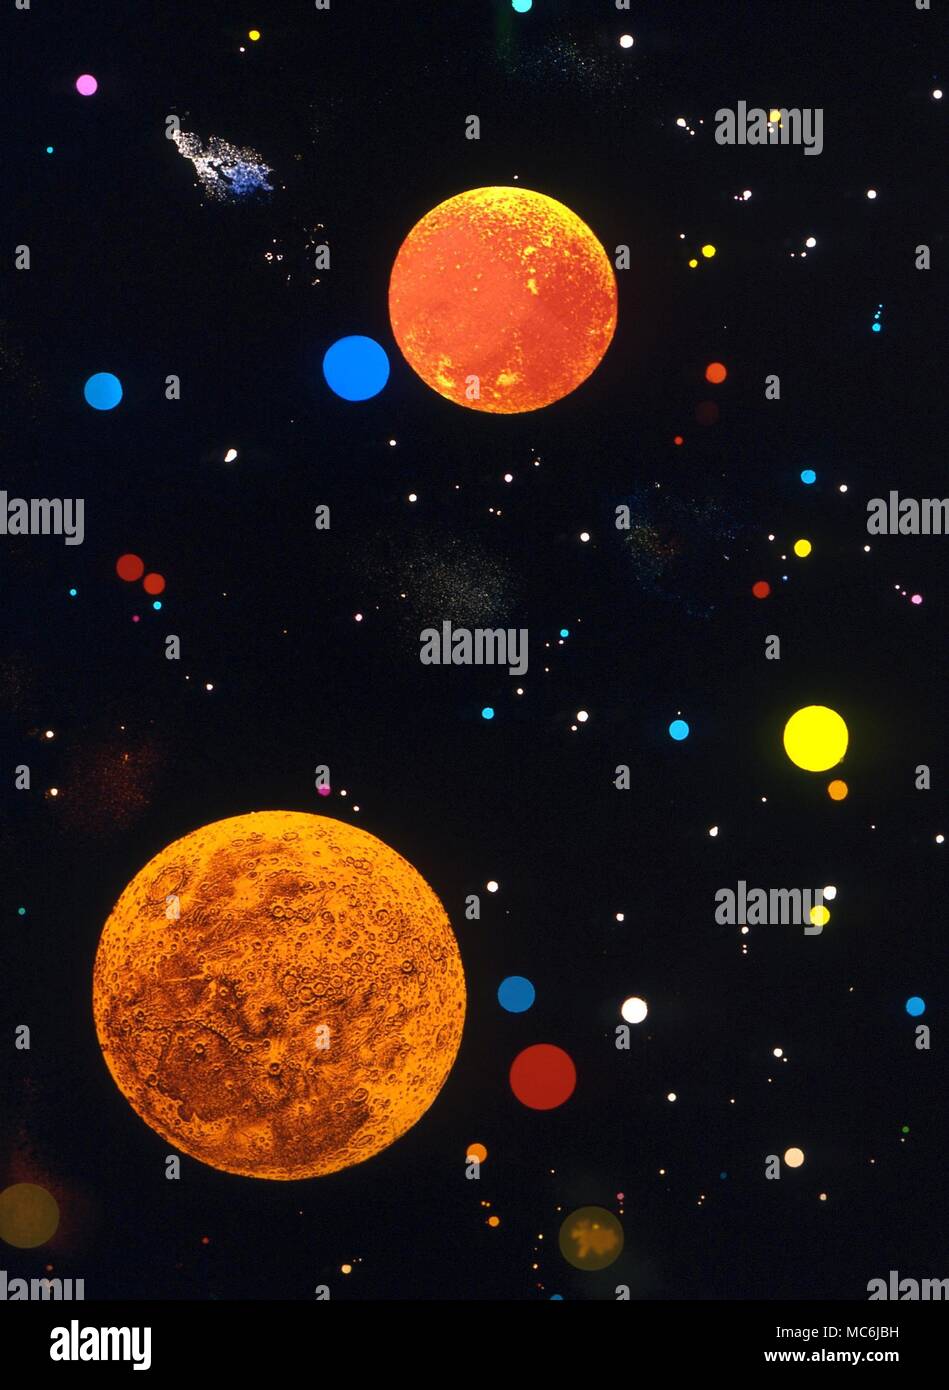 La fantaisie. Étoiles, planètes et galaxies - fantaisie paysage astral Banque D'Images